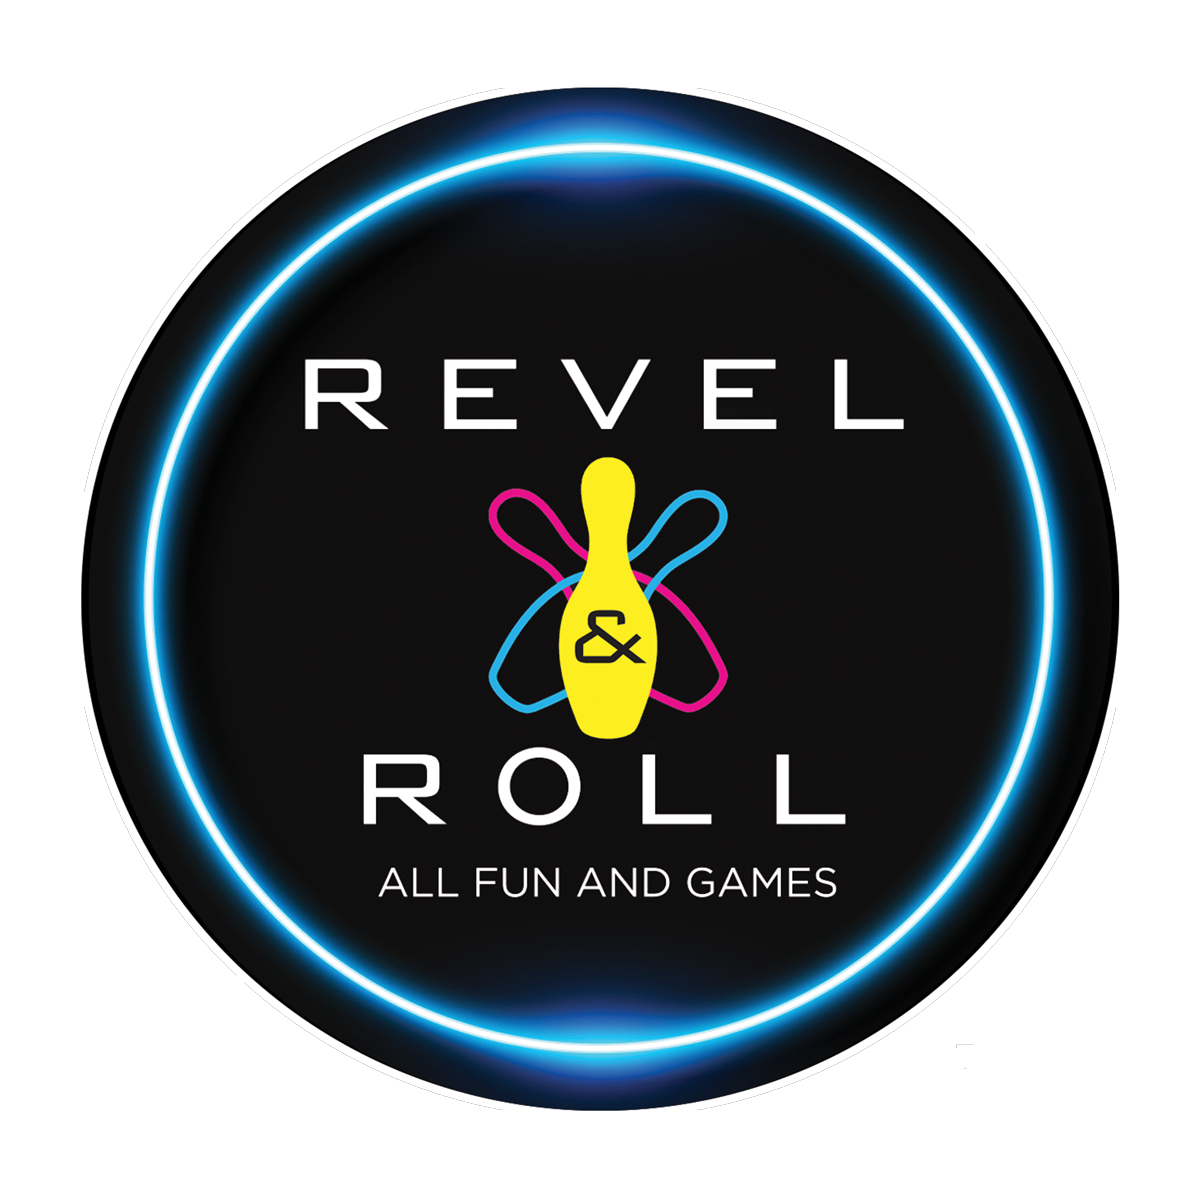 Revel & Roll